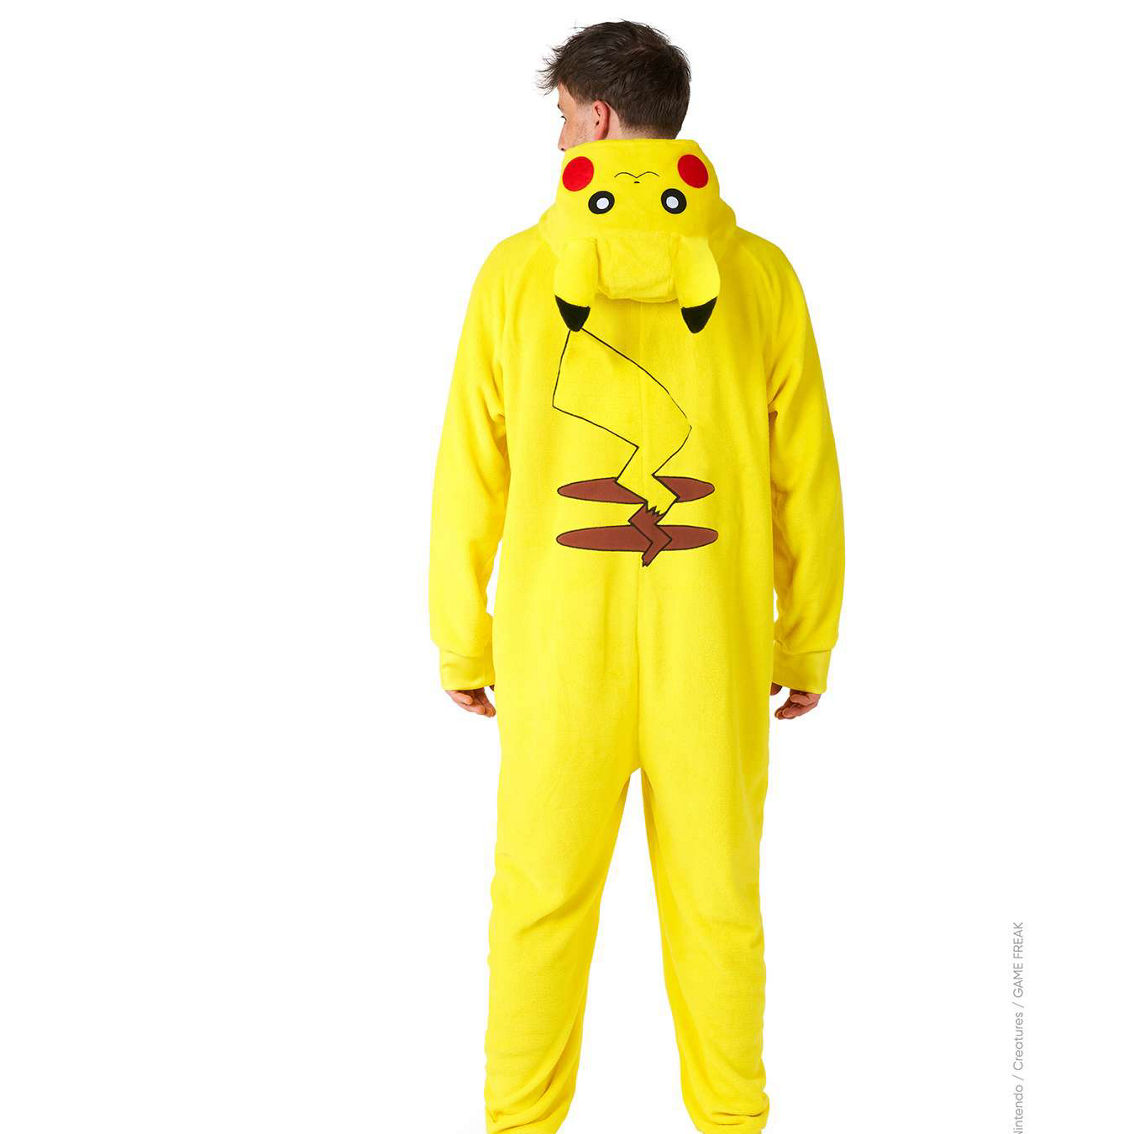 OppoSuits Pikachu Onesie - Image 3 of 3